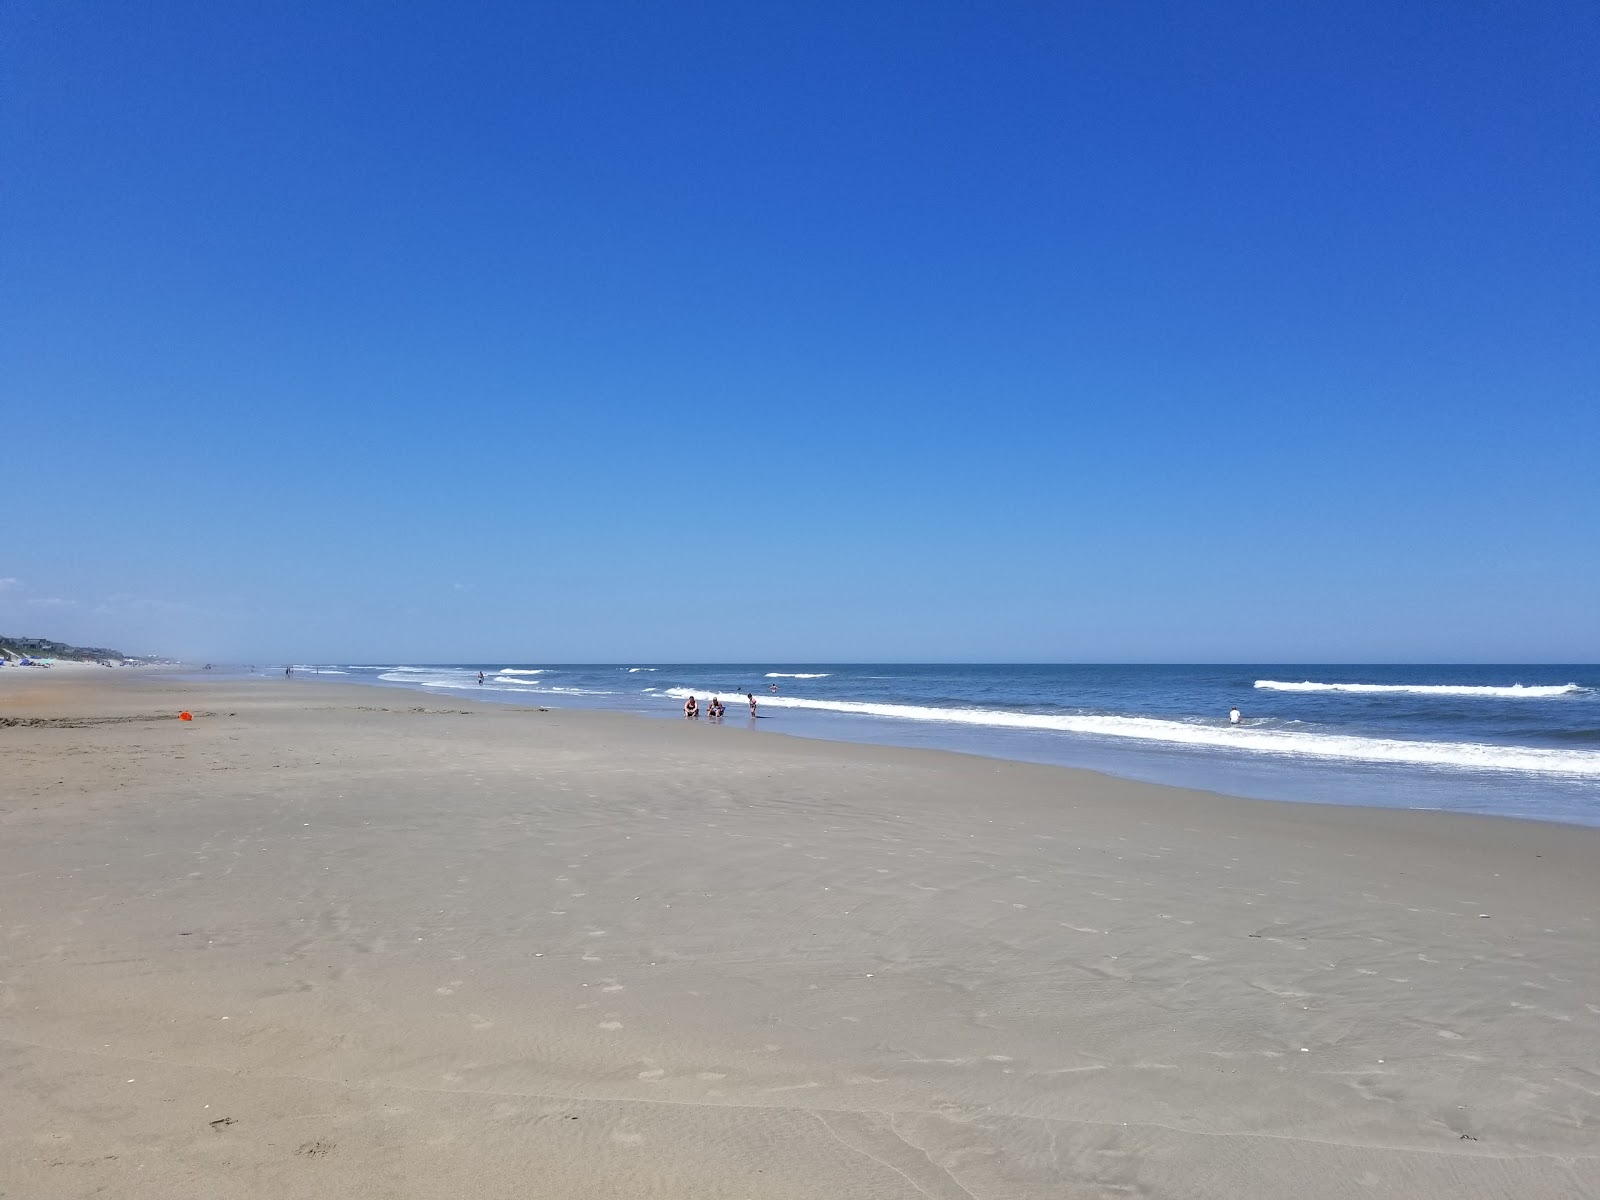 Fotografie cu Corolla beach cu o suprafață de nisip strălucitor